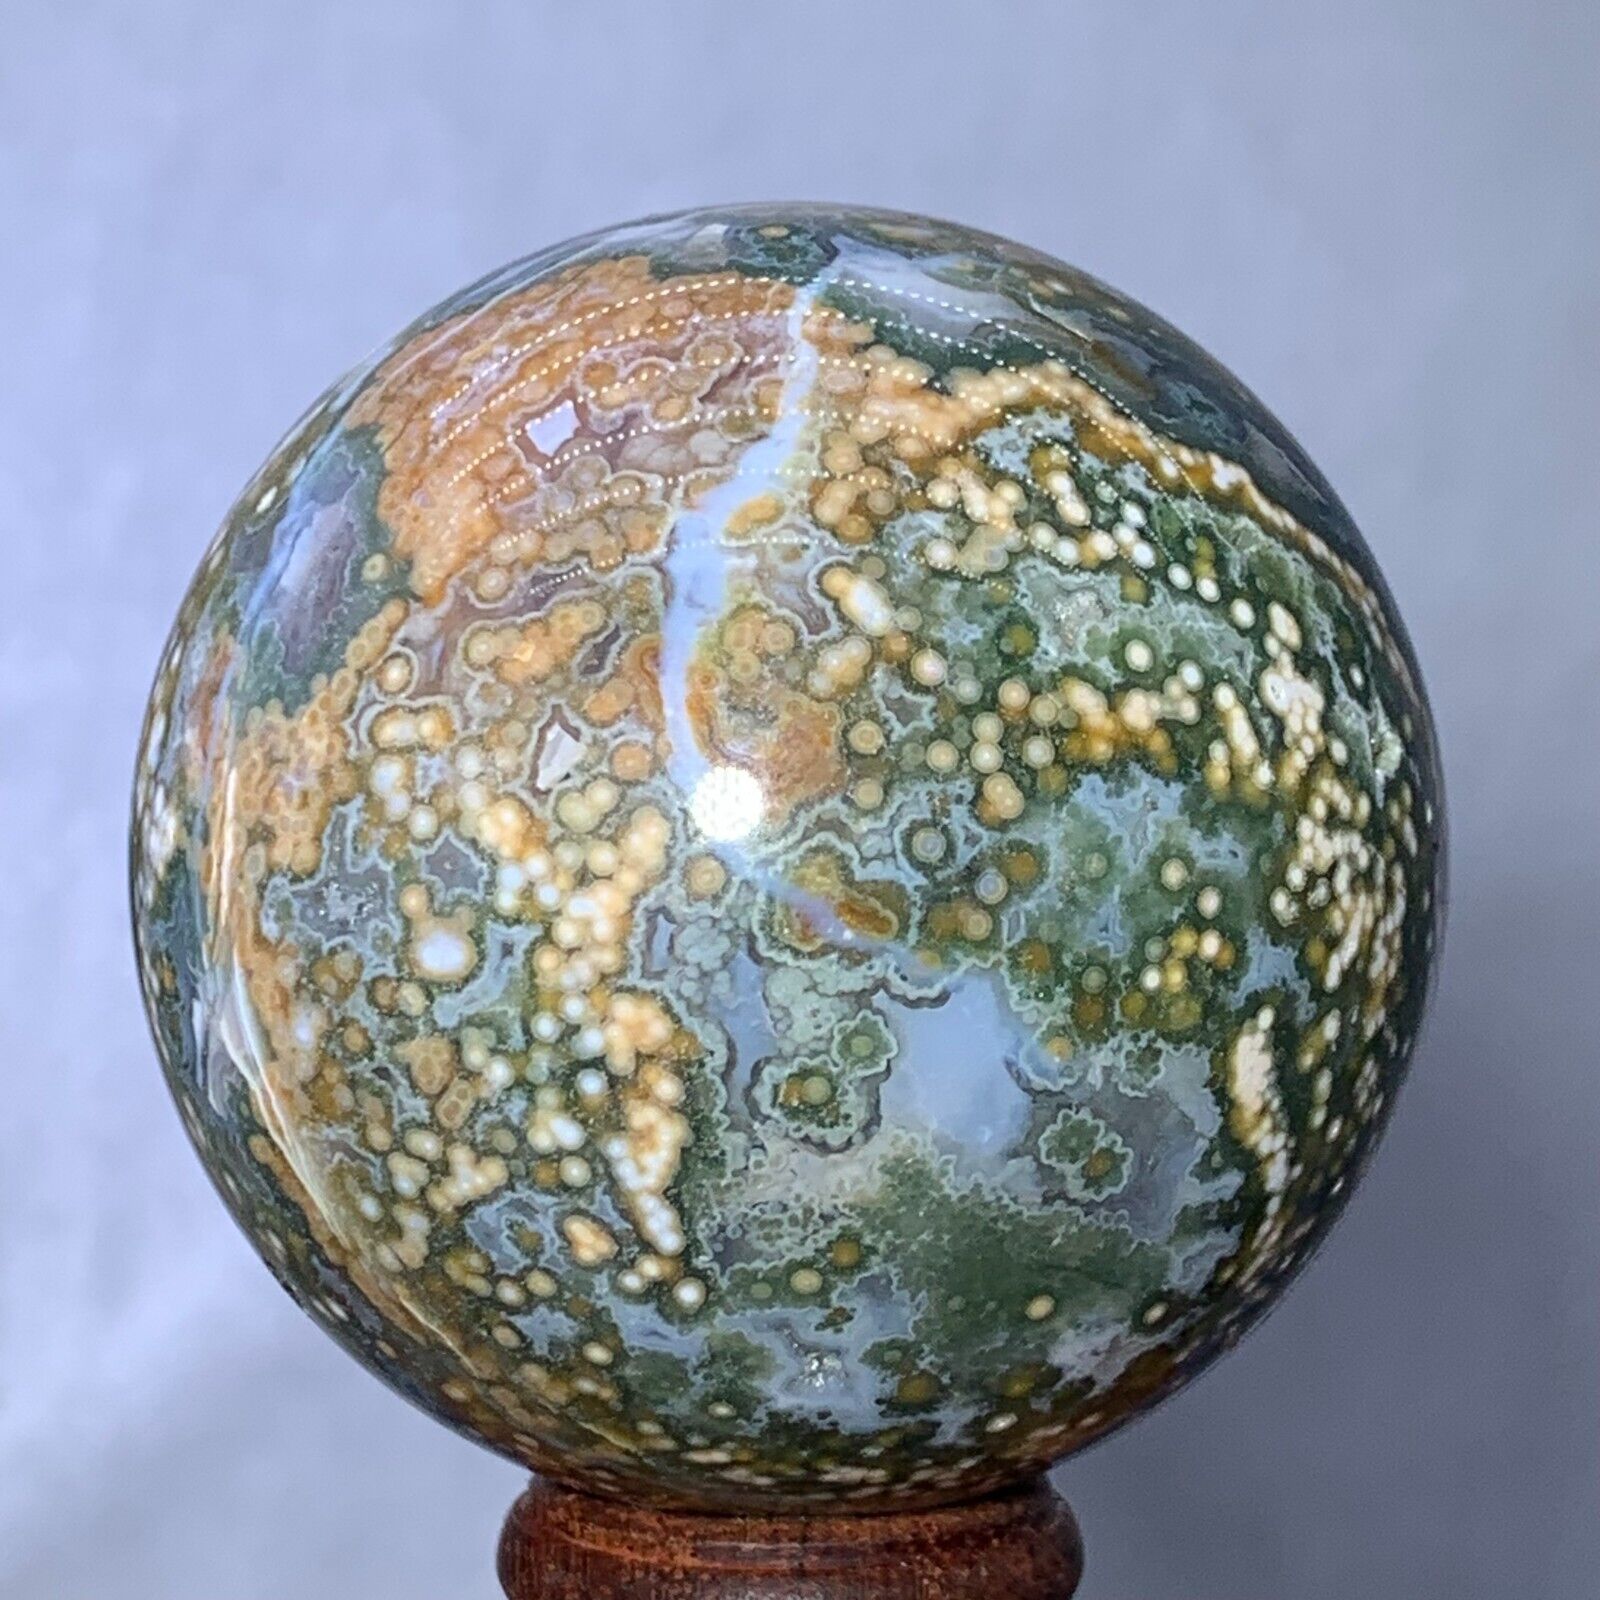 312g Rare Natural Ocean Jasper Sphere Quartz Crystal Ball Reiki Stone